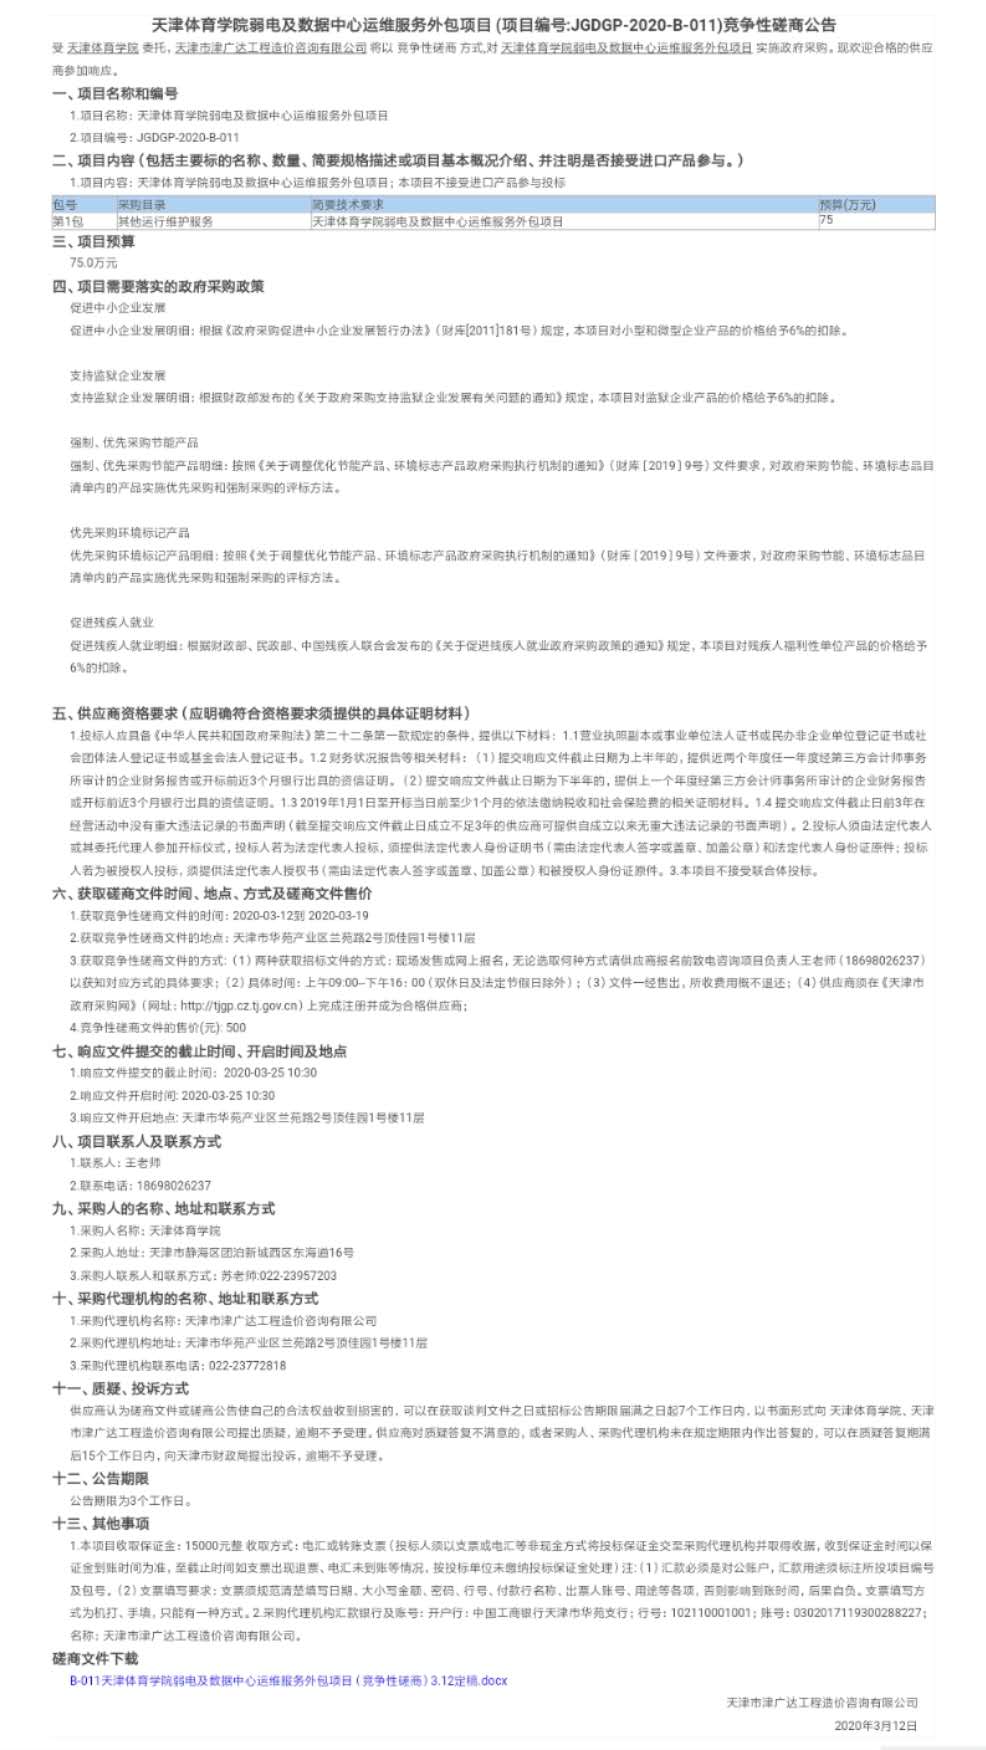 天津体育学院弱电及数据中心运维服务外包项目(图1)